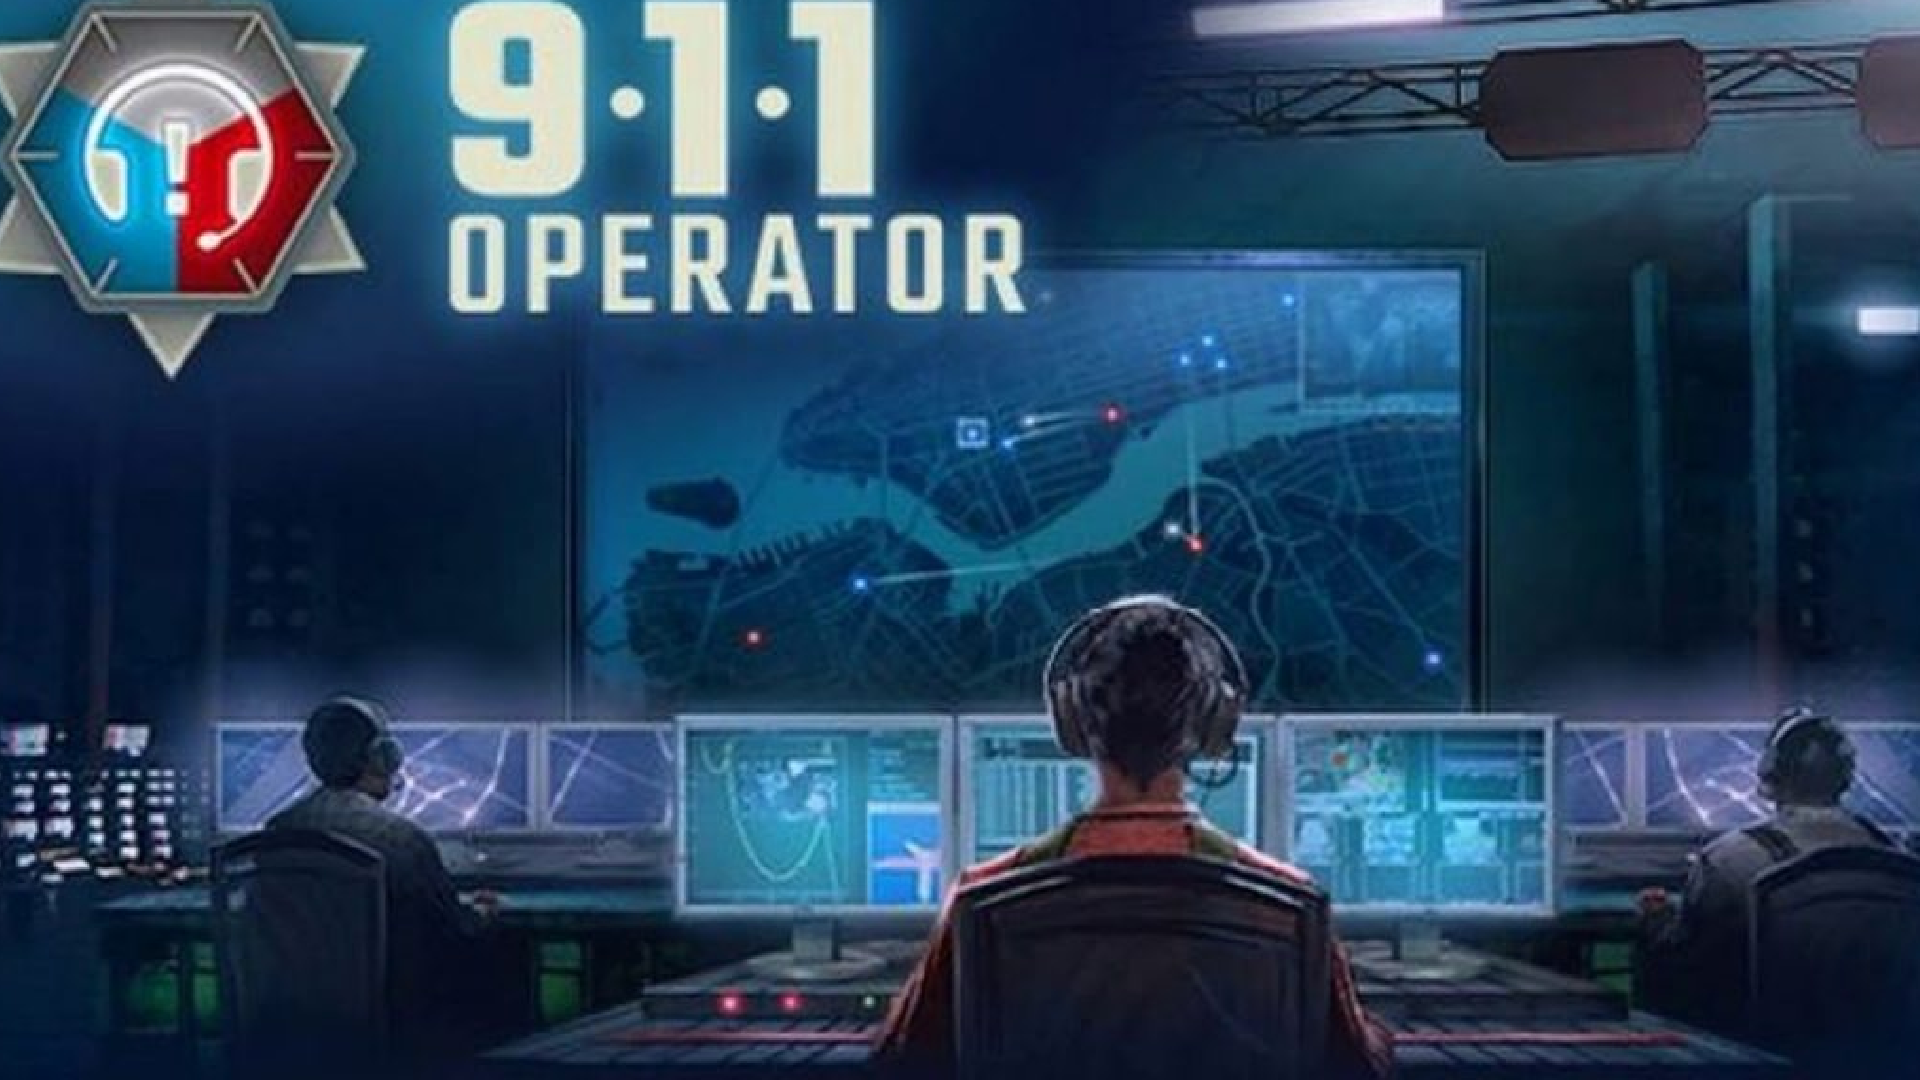 Banner of Operatore del 911 